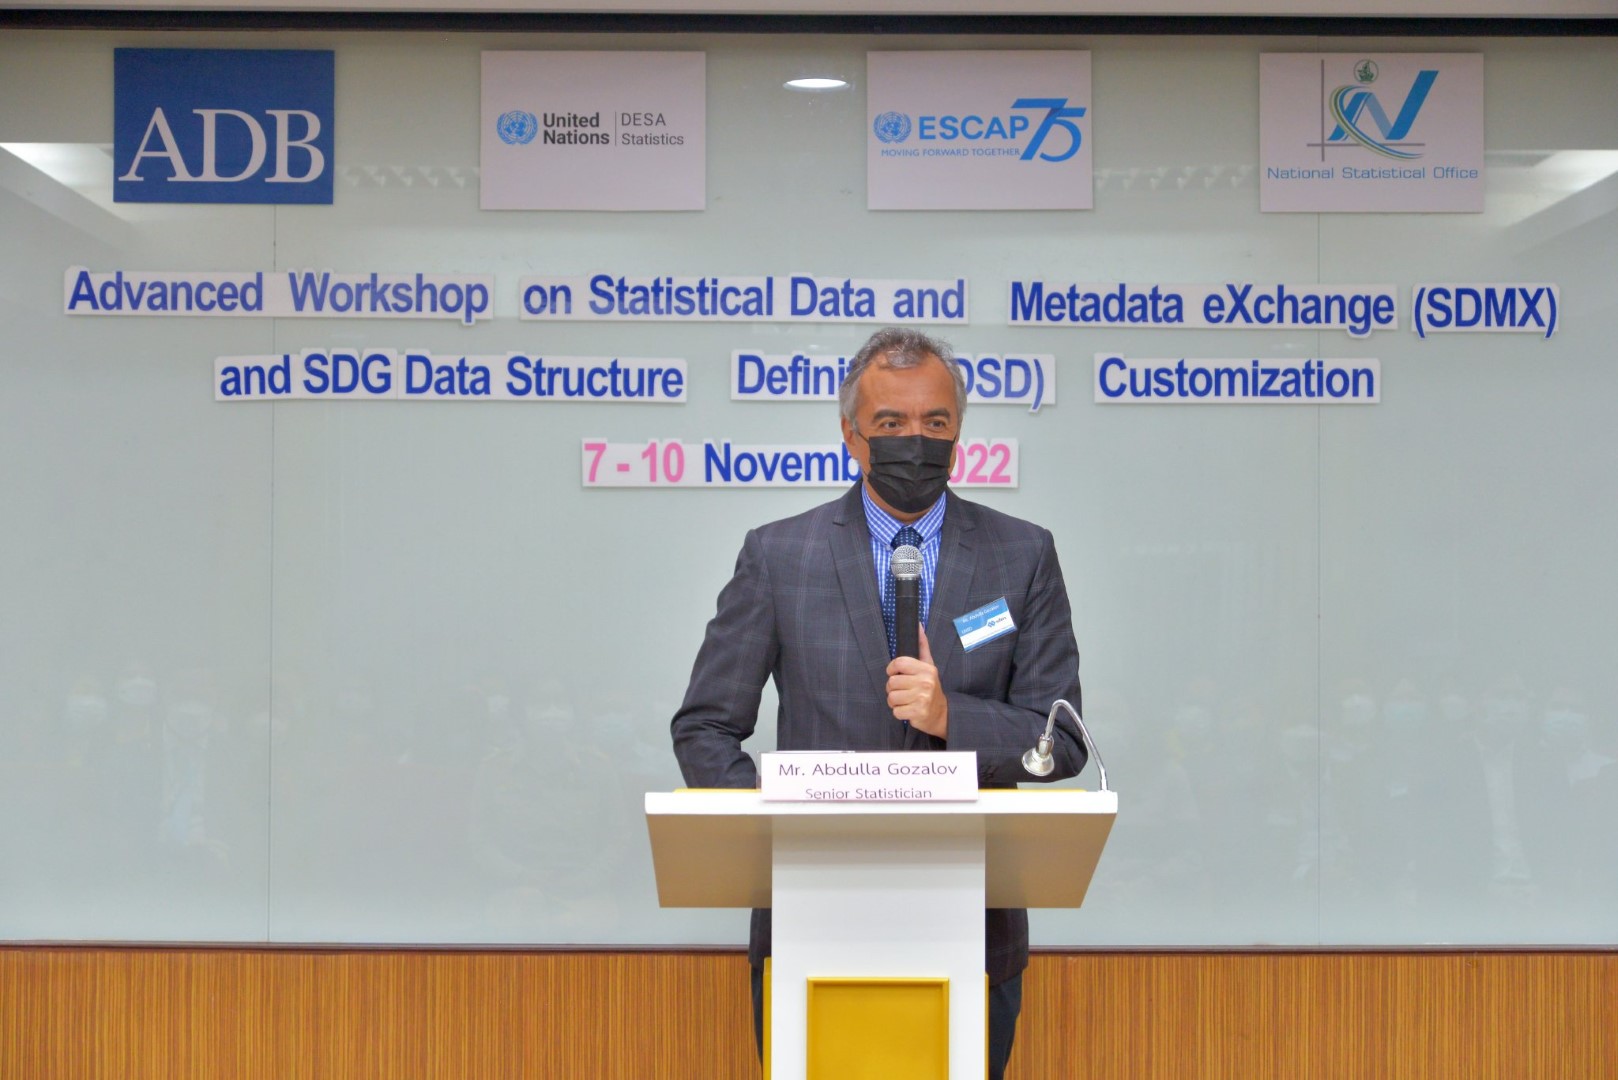 การฝึกอบรมหลักสูตร Advanced Workshop on Statistical Data and Metadata eXchange (SDMX) and SDG Data Structure Definition (DSD) Customization ในโครงการ Data for Development (Phase 2)